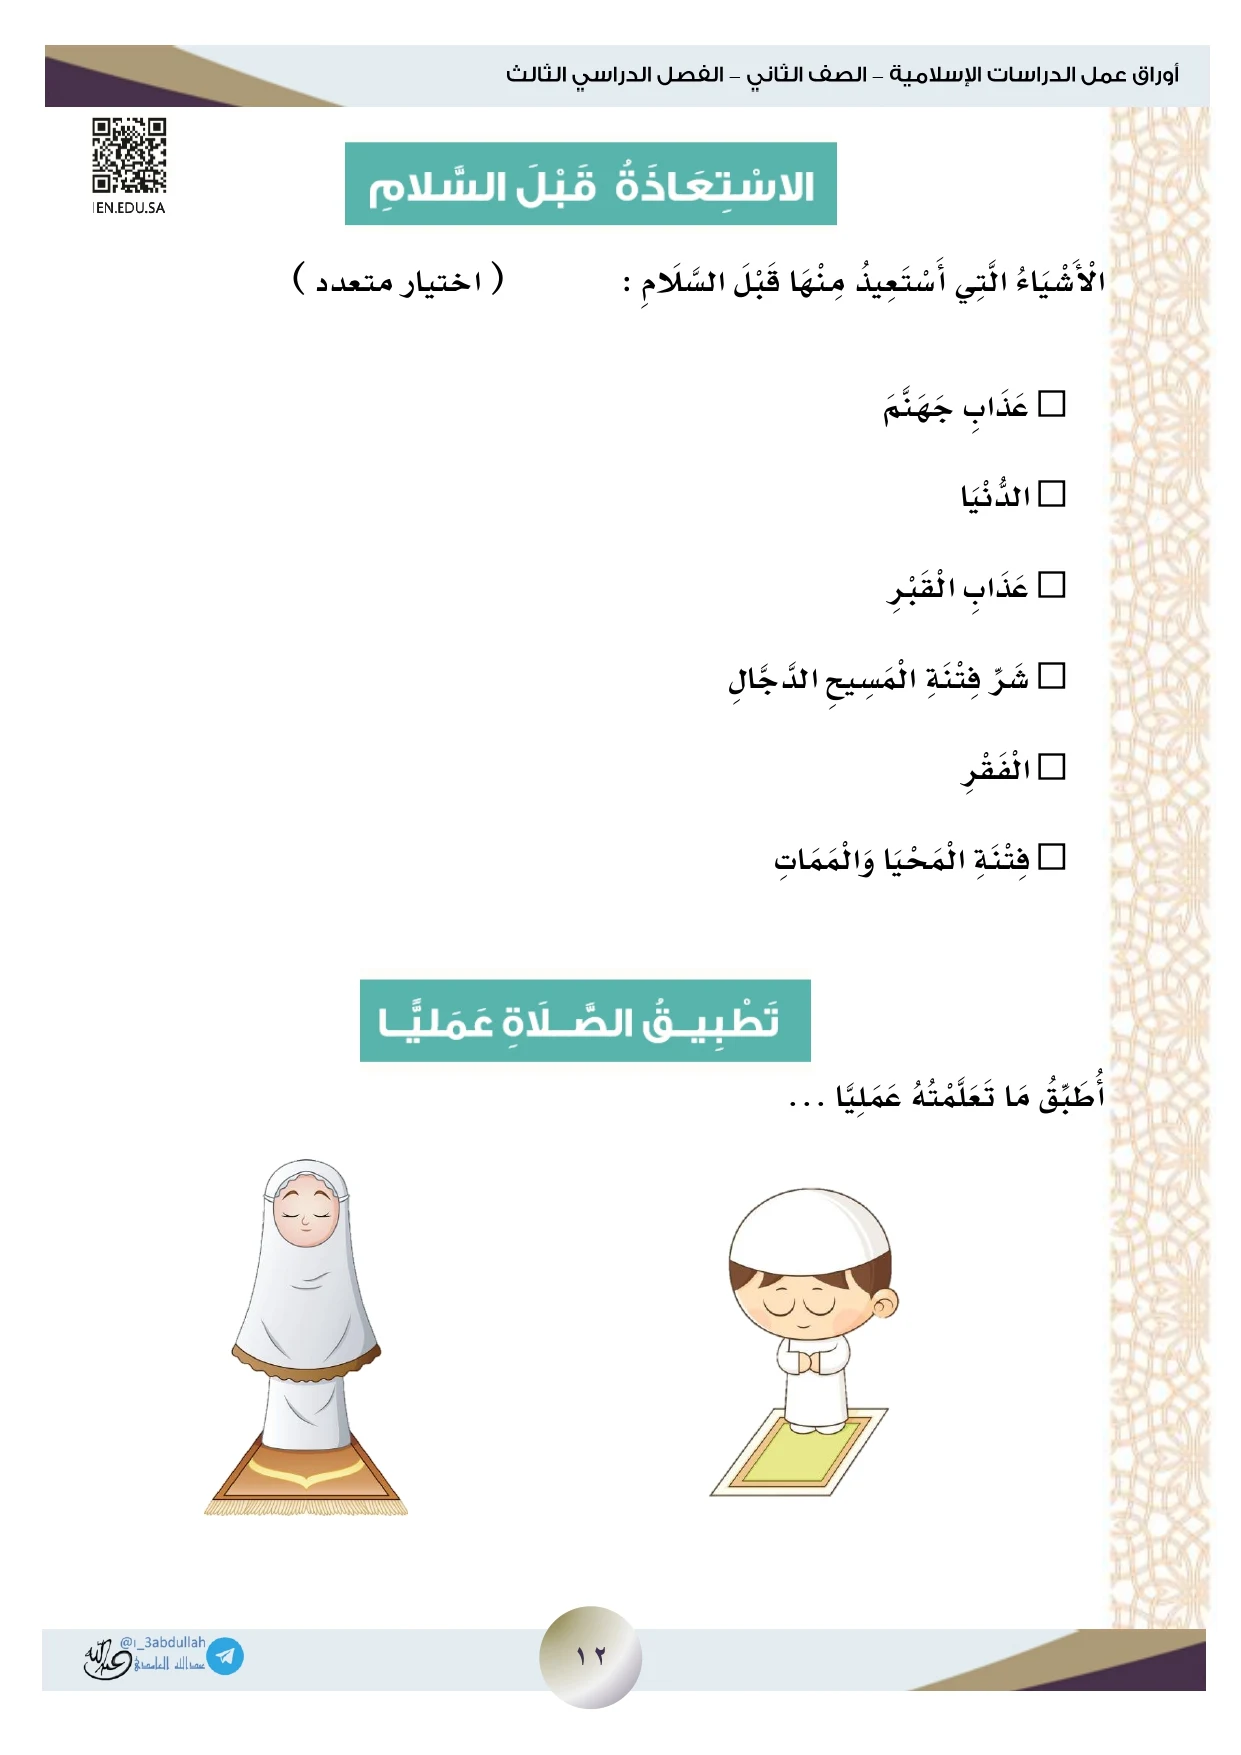 أوراق عمل لمادة التربية الإسلامية الصف الثاني الابتدائي الفصل الدراسي الثالث pdf تحميل مباشر مجاني